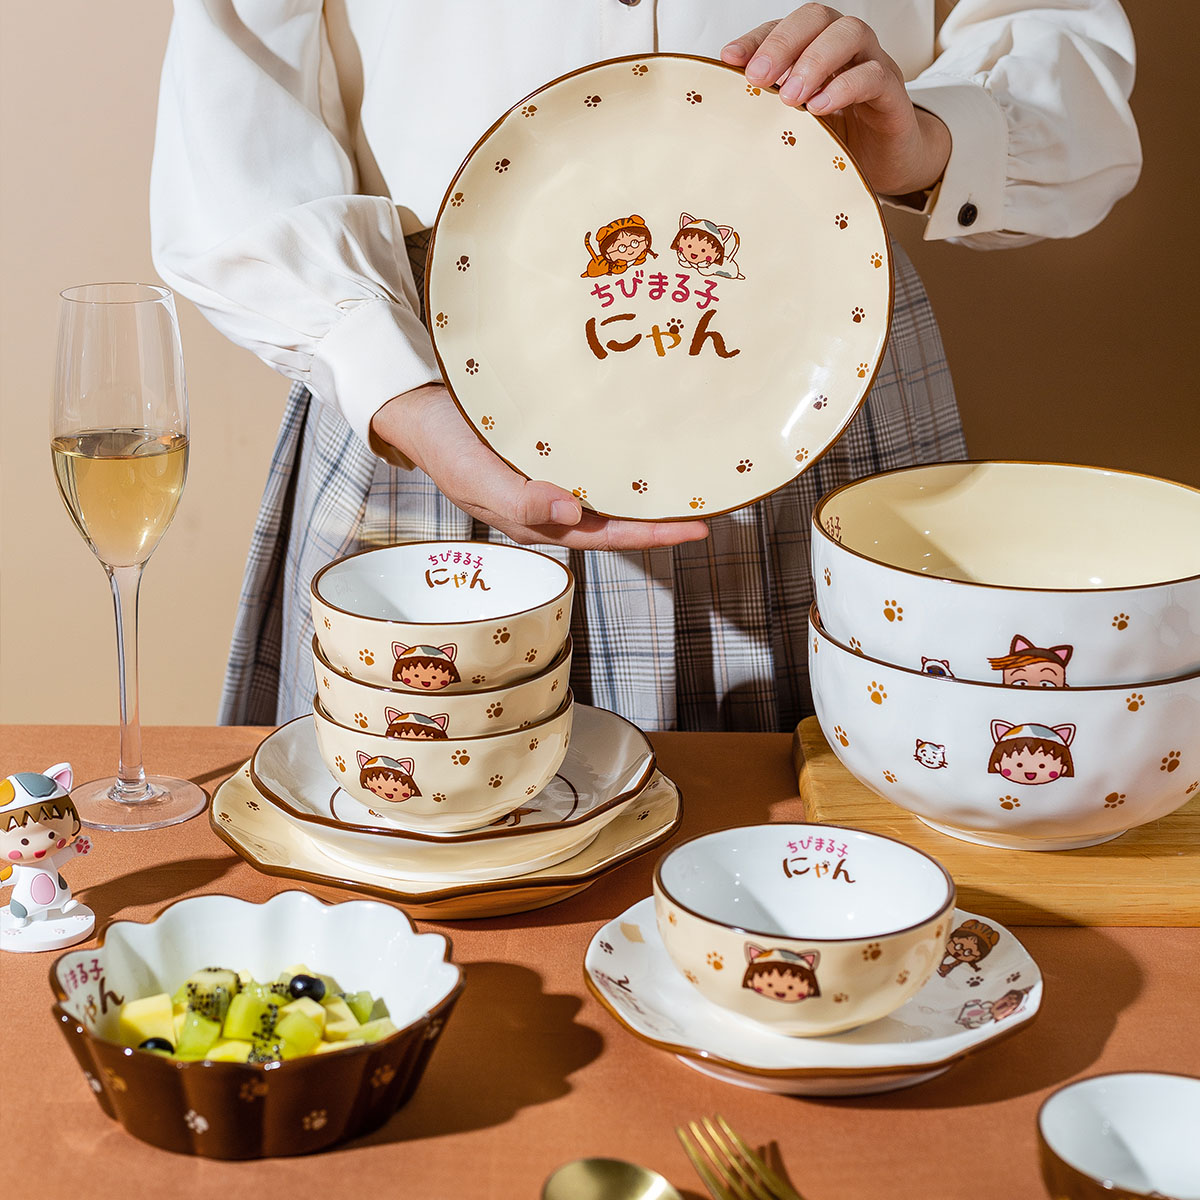 摩登主妇 陶瓷碗盘餐具卡通可爱家用汤碗米饭碗 9.6元